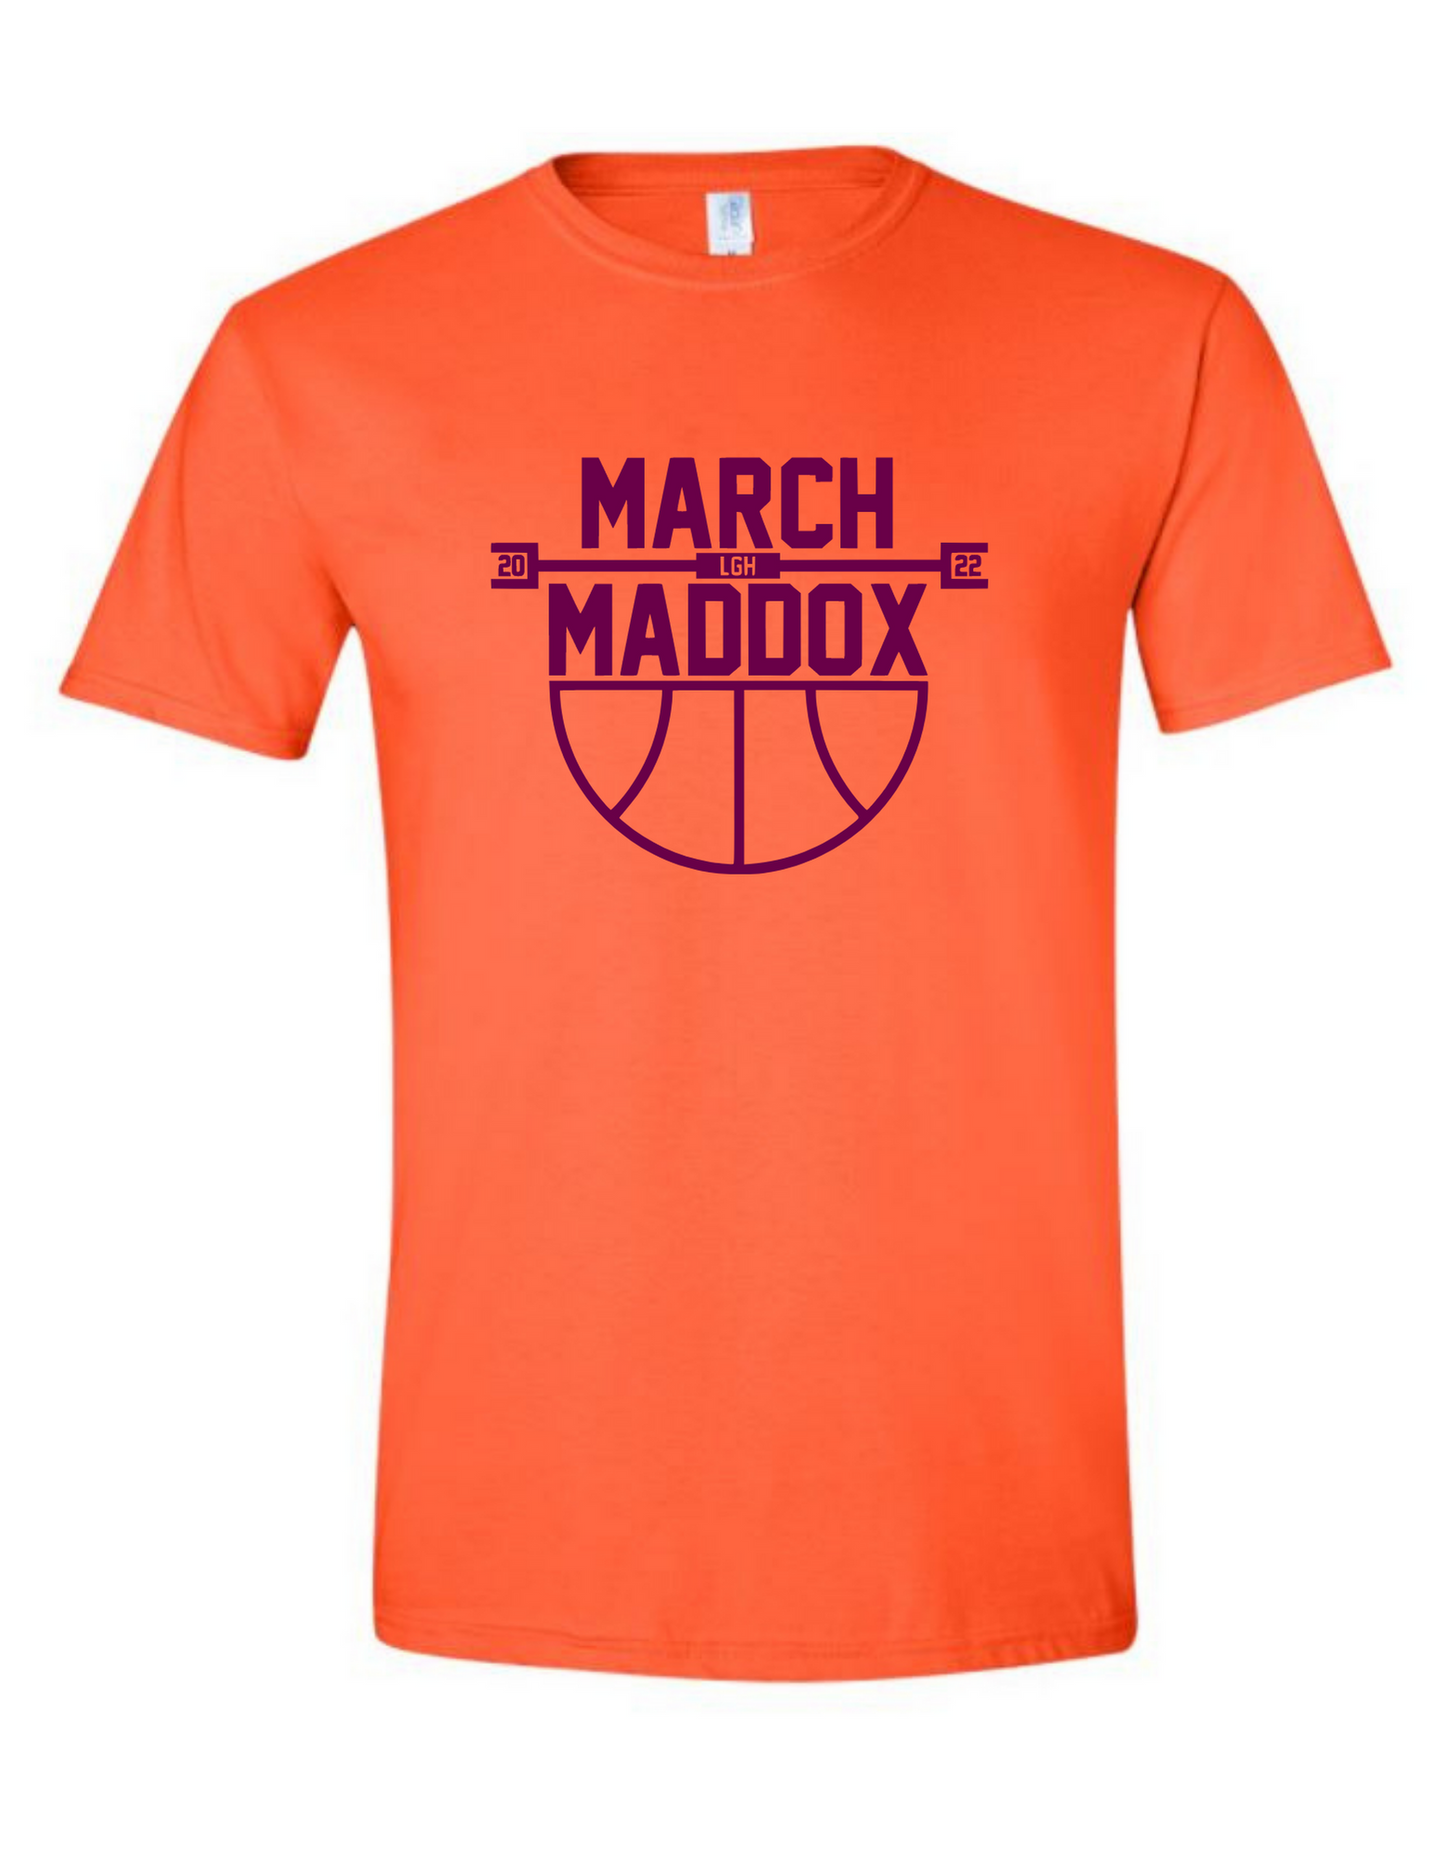 March Maddox Apparel